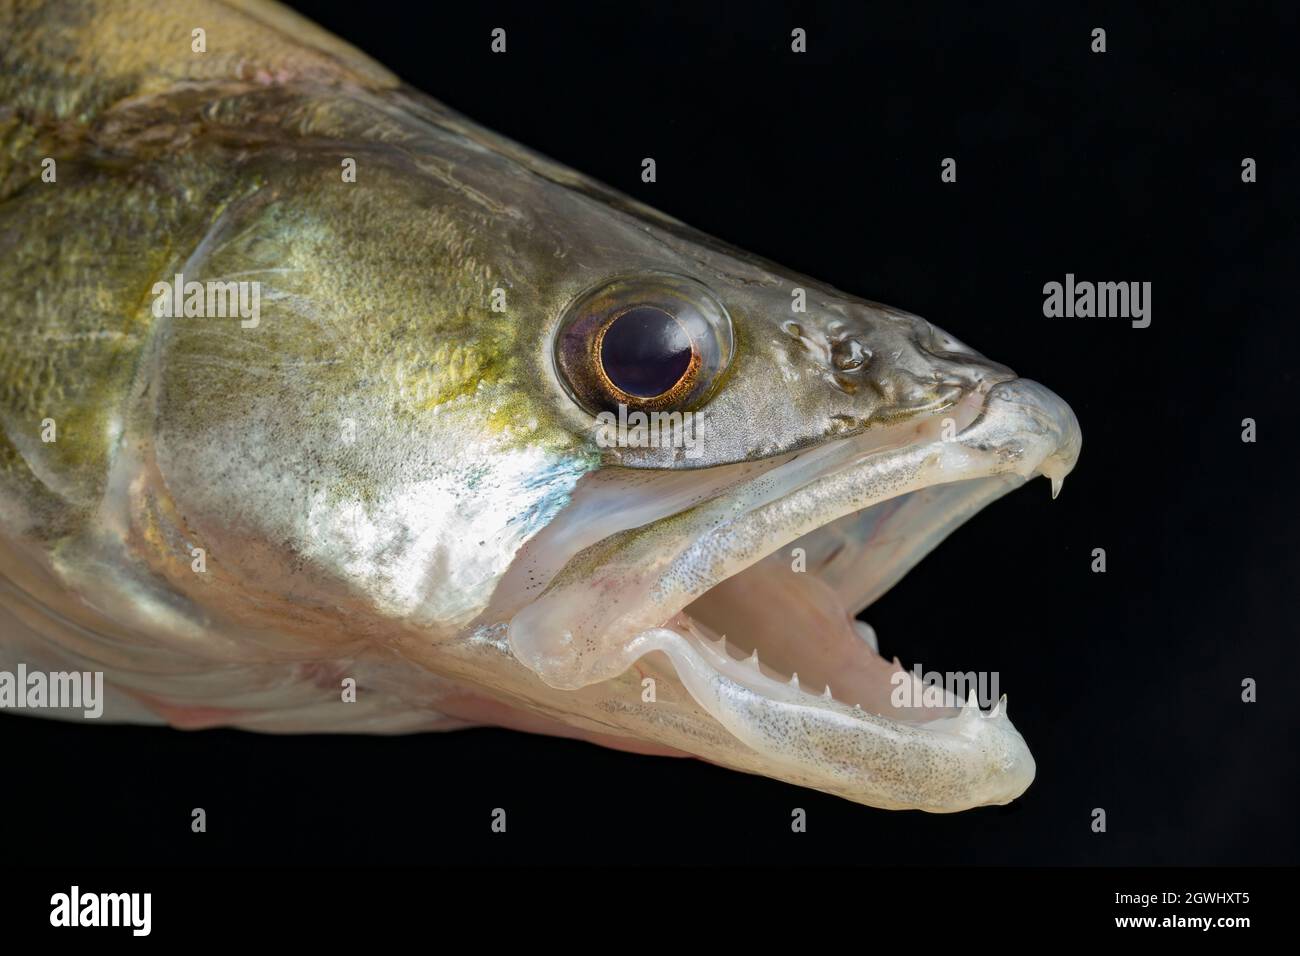 La cabeza y las mandíbulas de un Zander, Sander lucioperca. Zander es una especie depredadora que predica sobre otros peces. Son una especie invasora no nativa en t Foto de stock